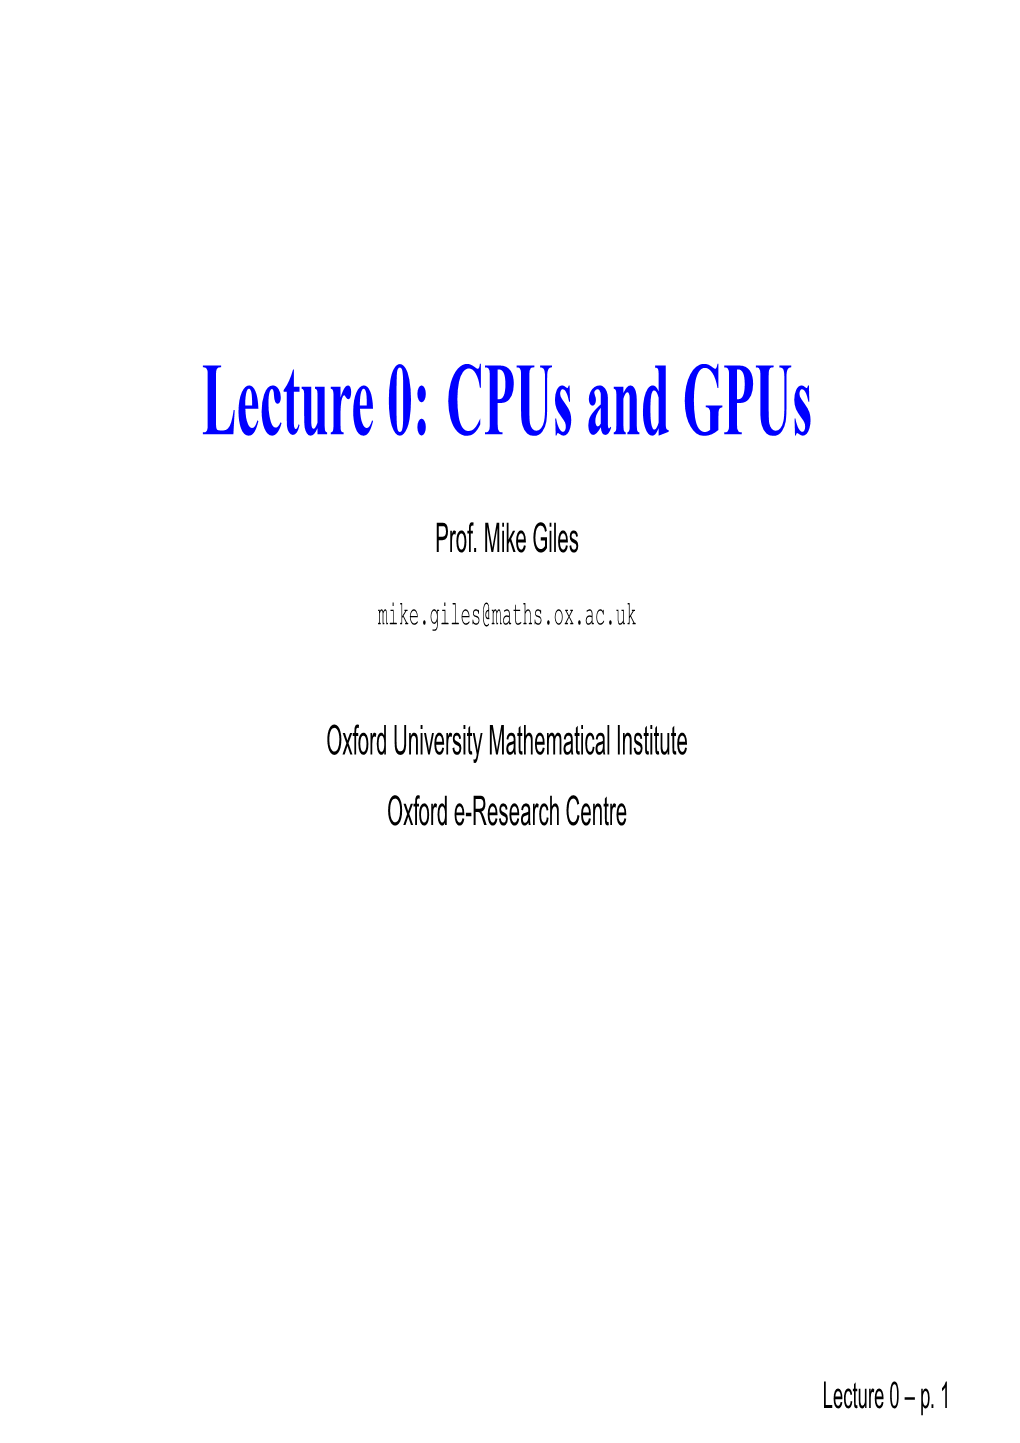 Lecture 0: Cpus and Gpus